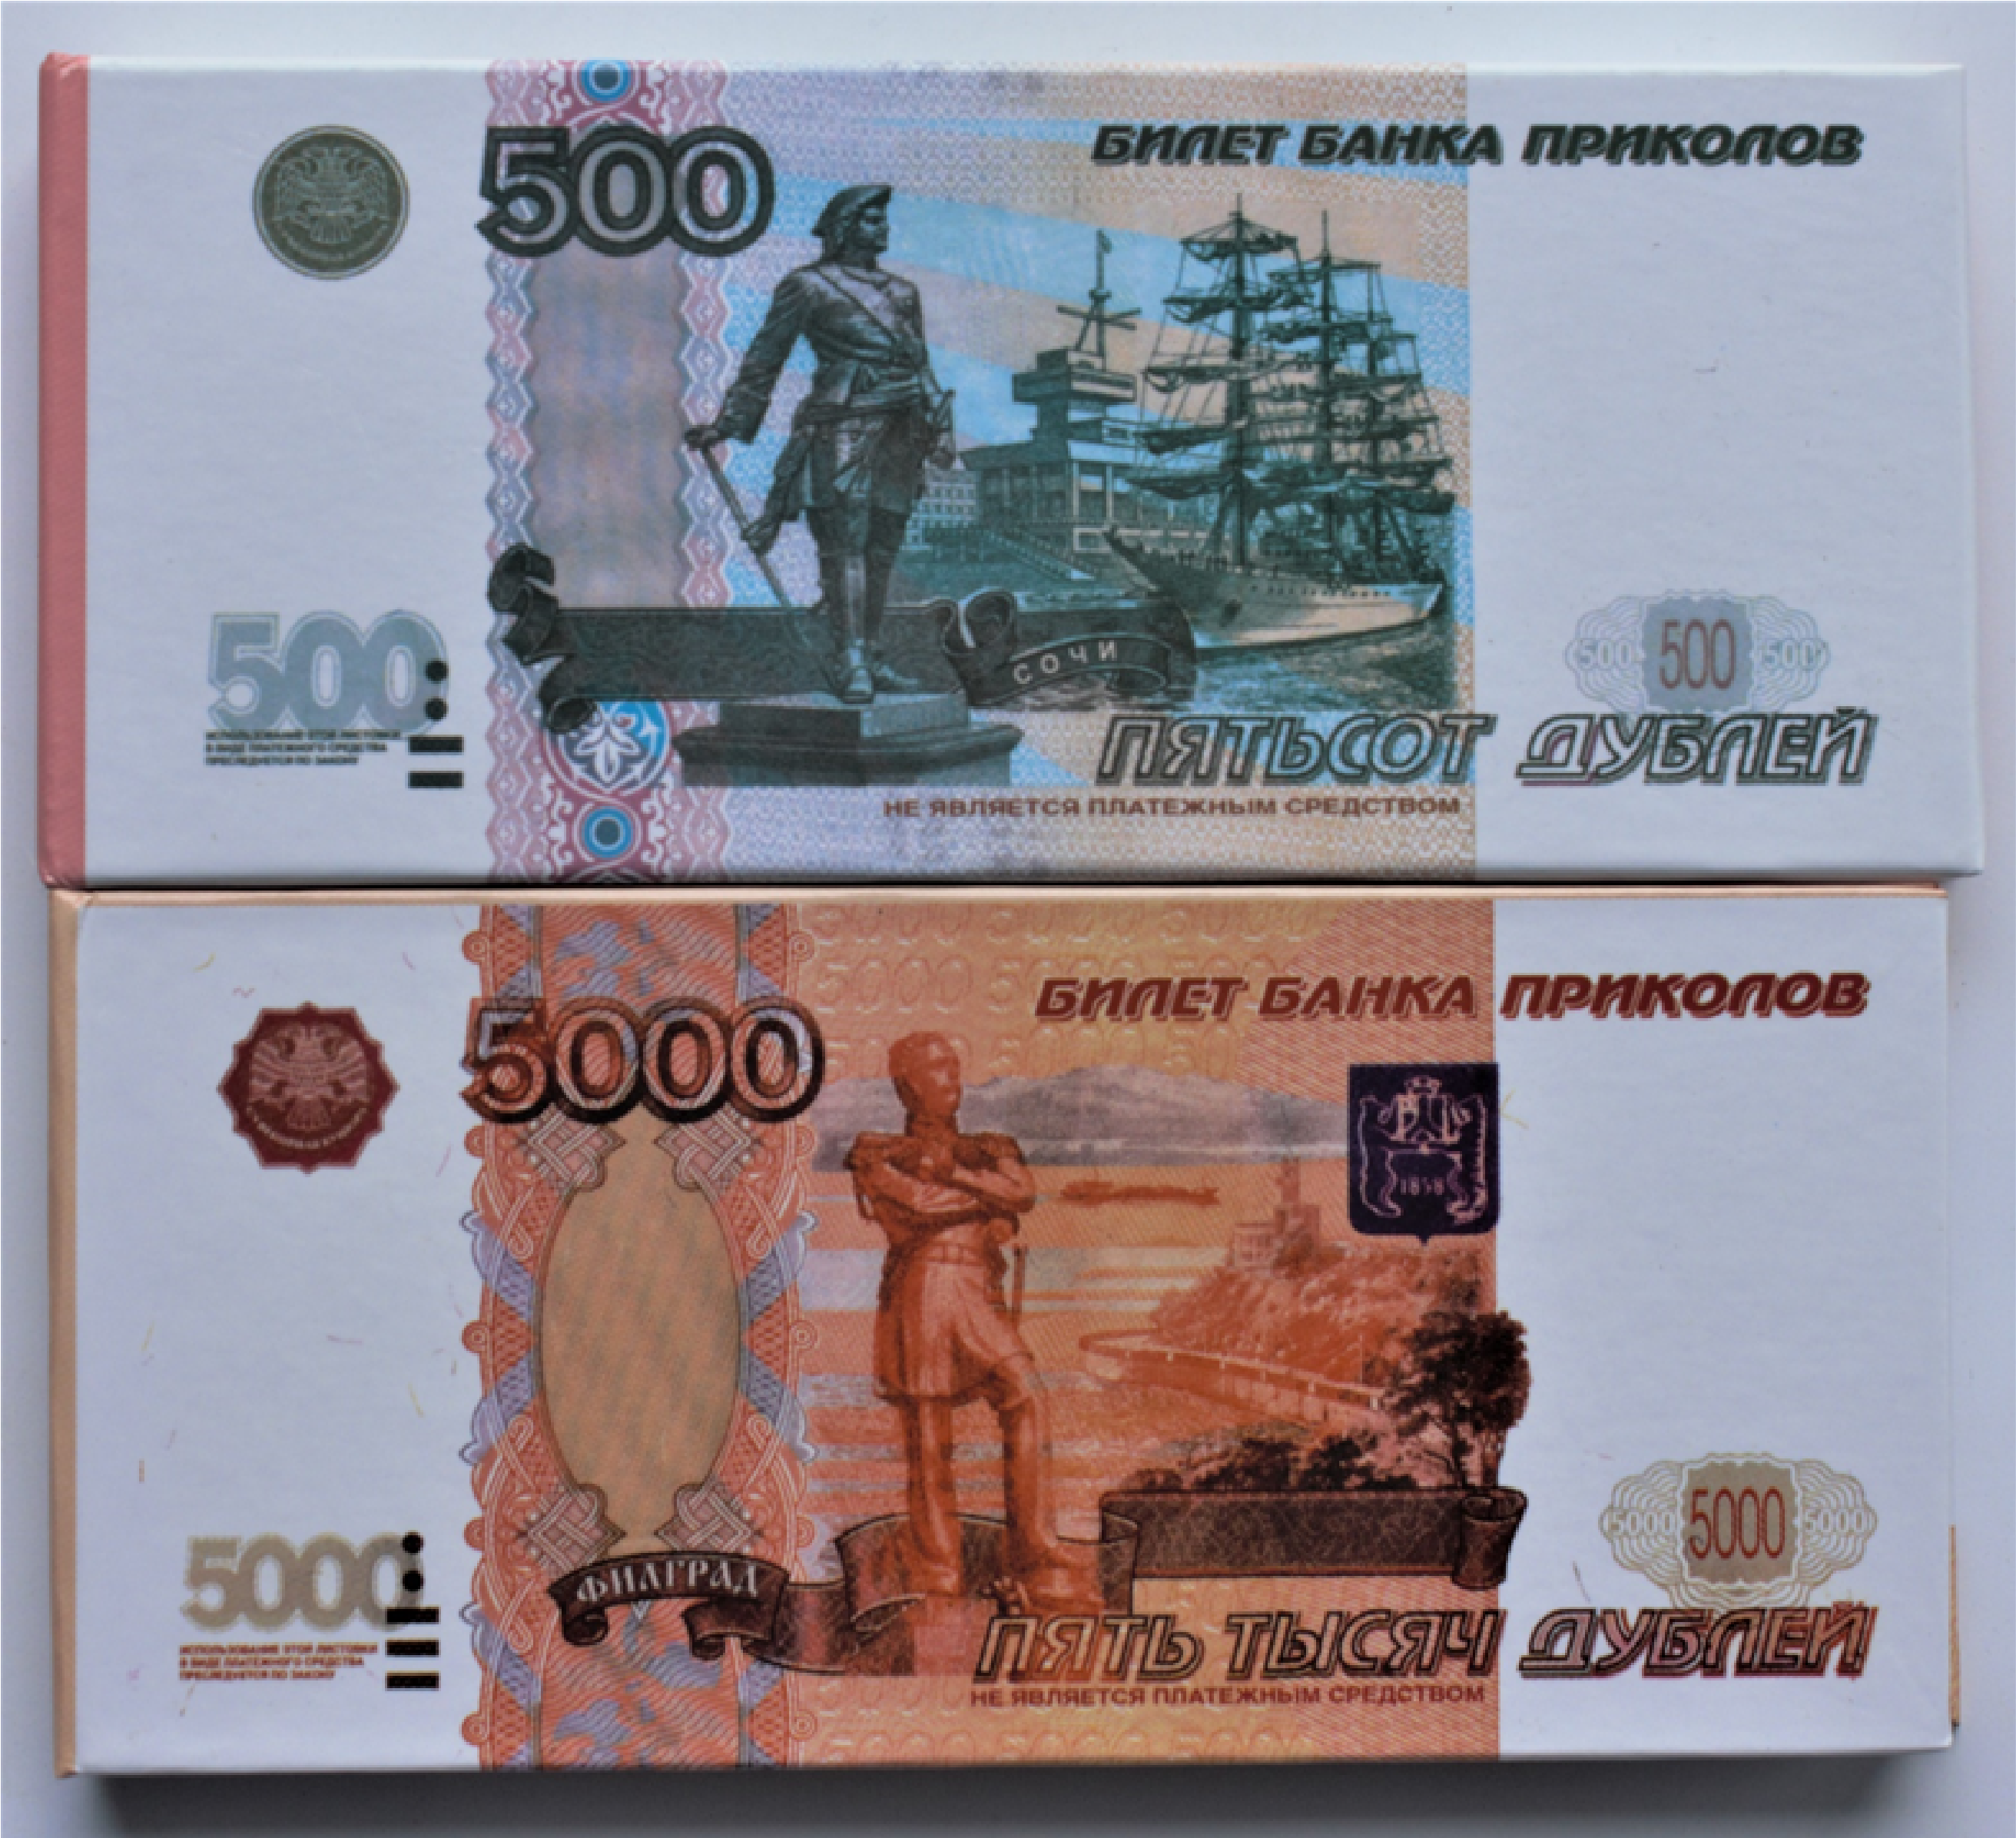 Банк 500 рублей. 500 Рублей и 5000 рублей. Билет банка приколов. 500 Рублей банка приколов. Купюры 500 и 5000 рублей.